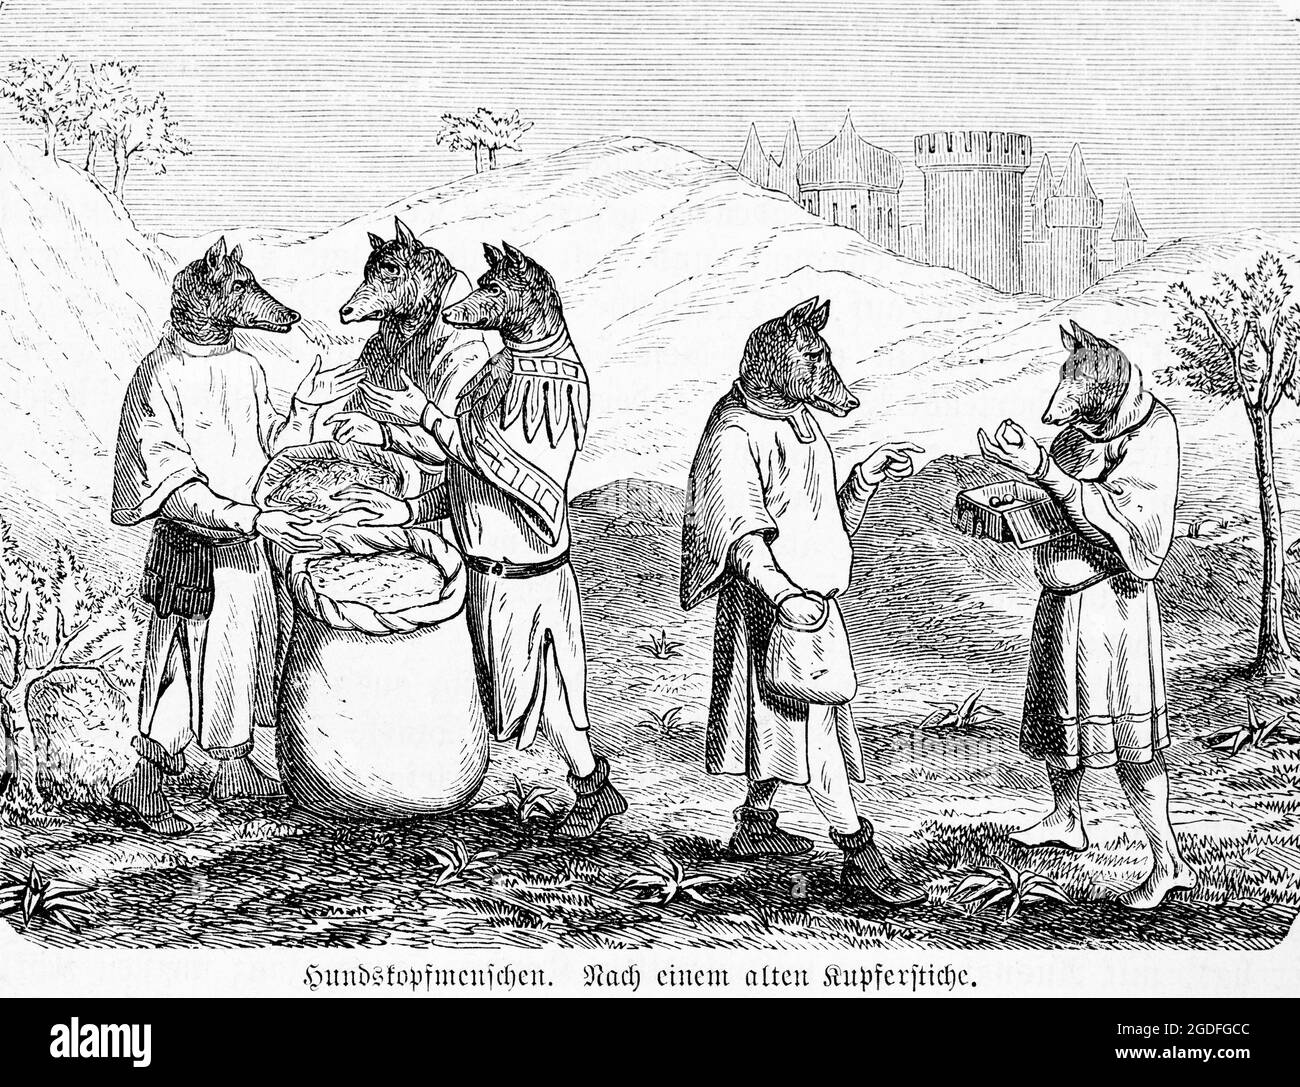 Los humanos con cabeza de perro, cínólogos, supuestamente viven en el norte de la India según un viejo mito, ilustración histórica 1881 Foto de stock